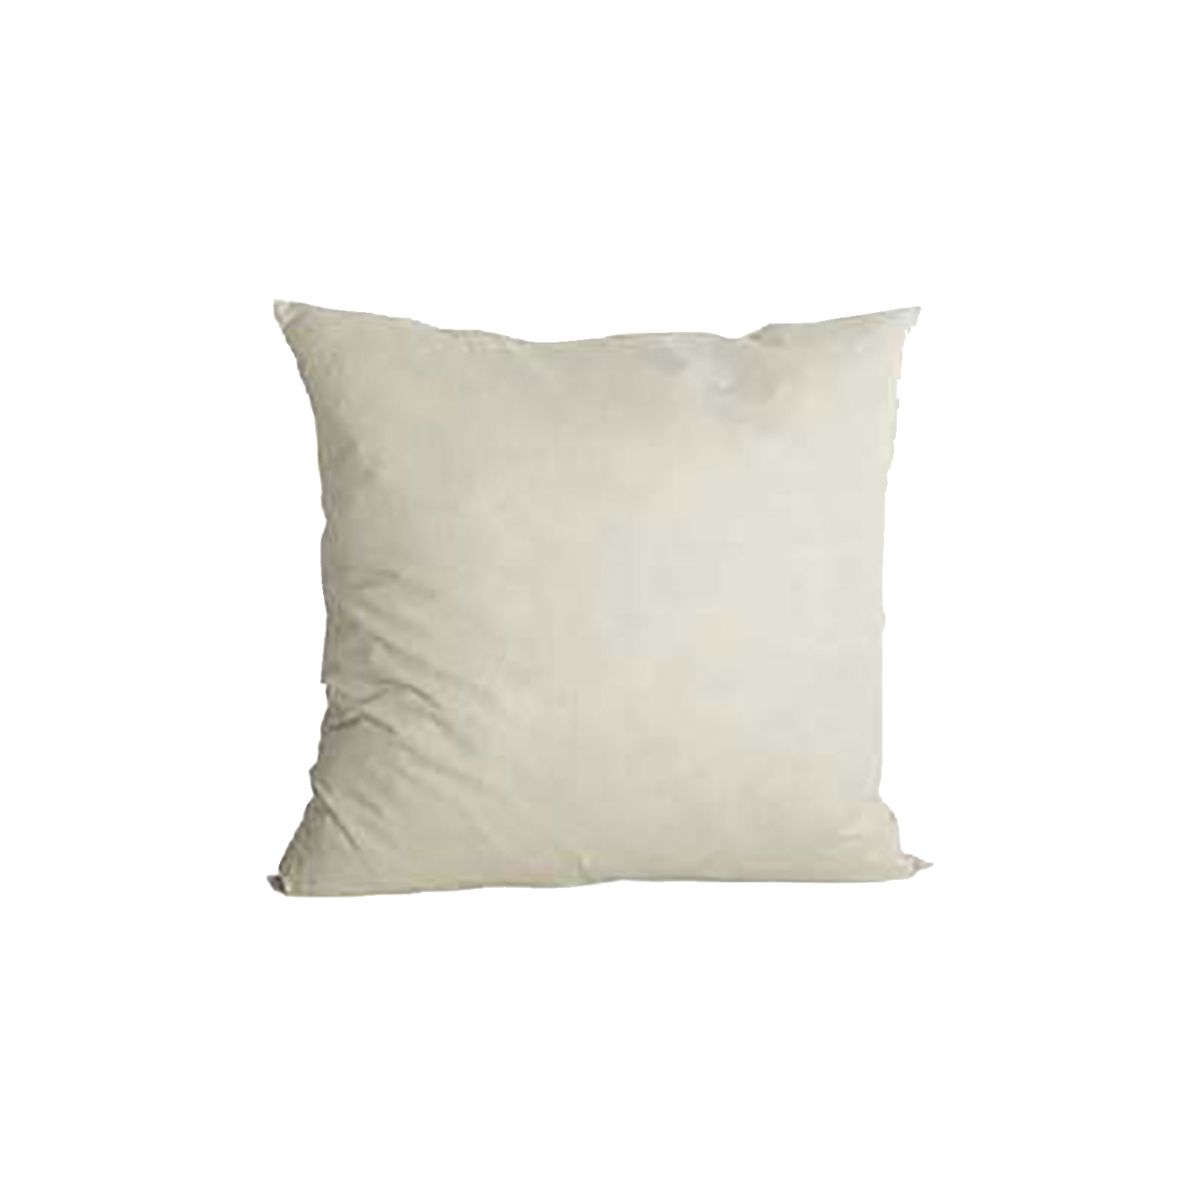 Pillow stuffing -  White